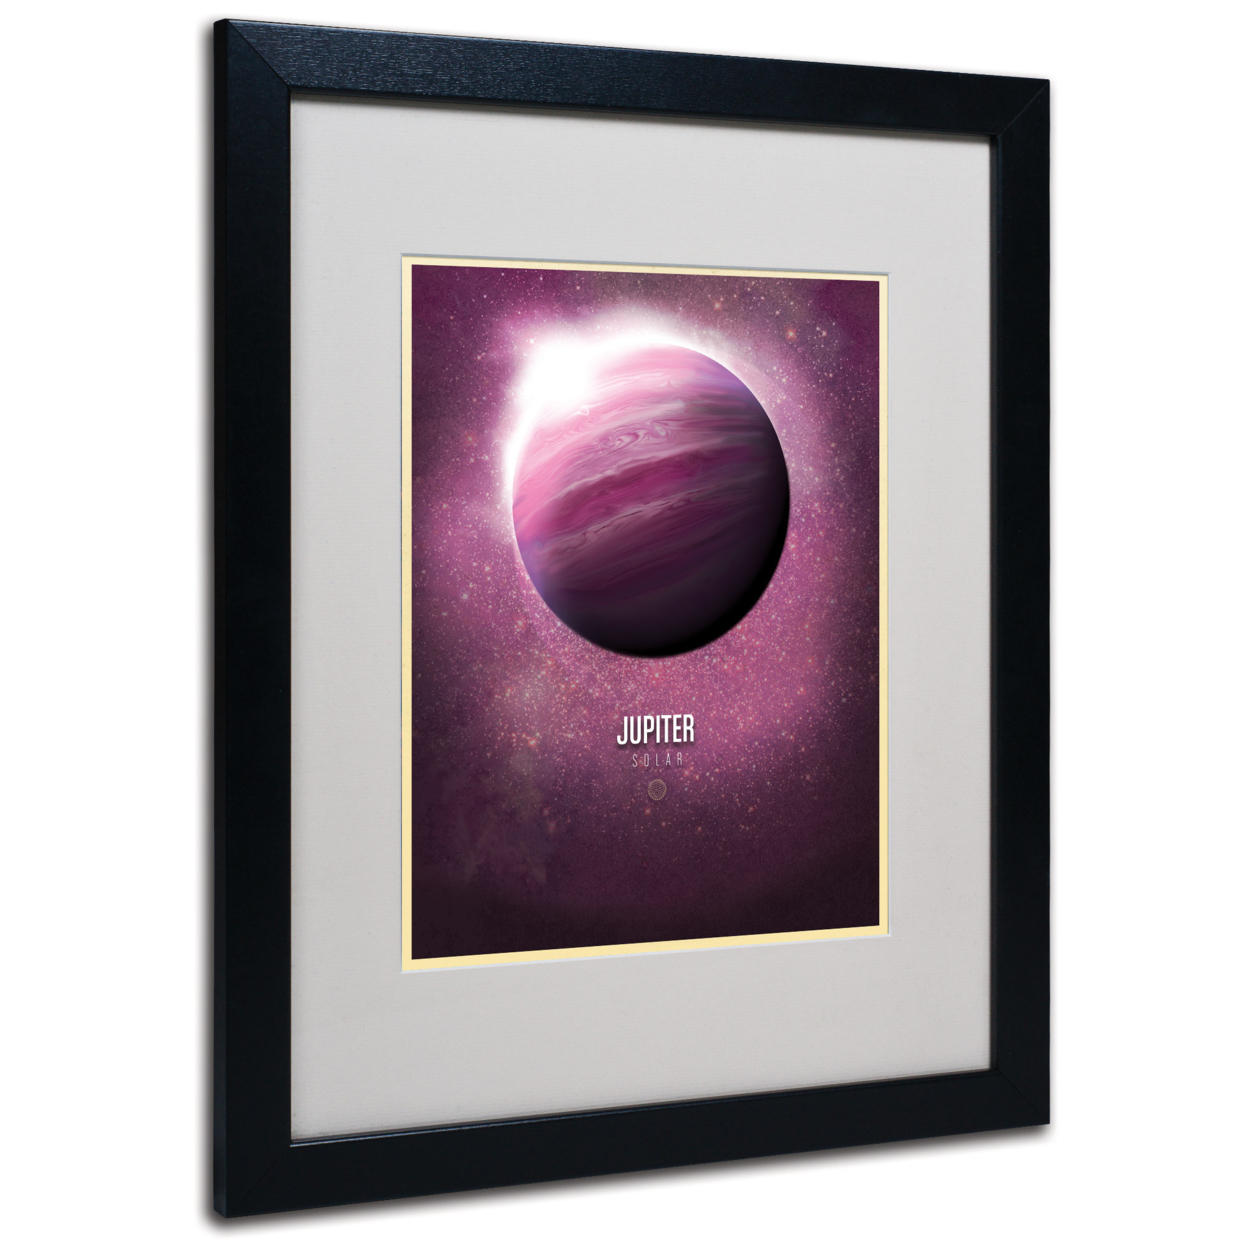 Christian Jackson 'Jupiter' Black Wooden Framed Art 18 X 22 Inches